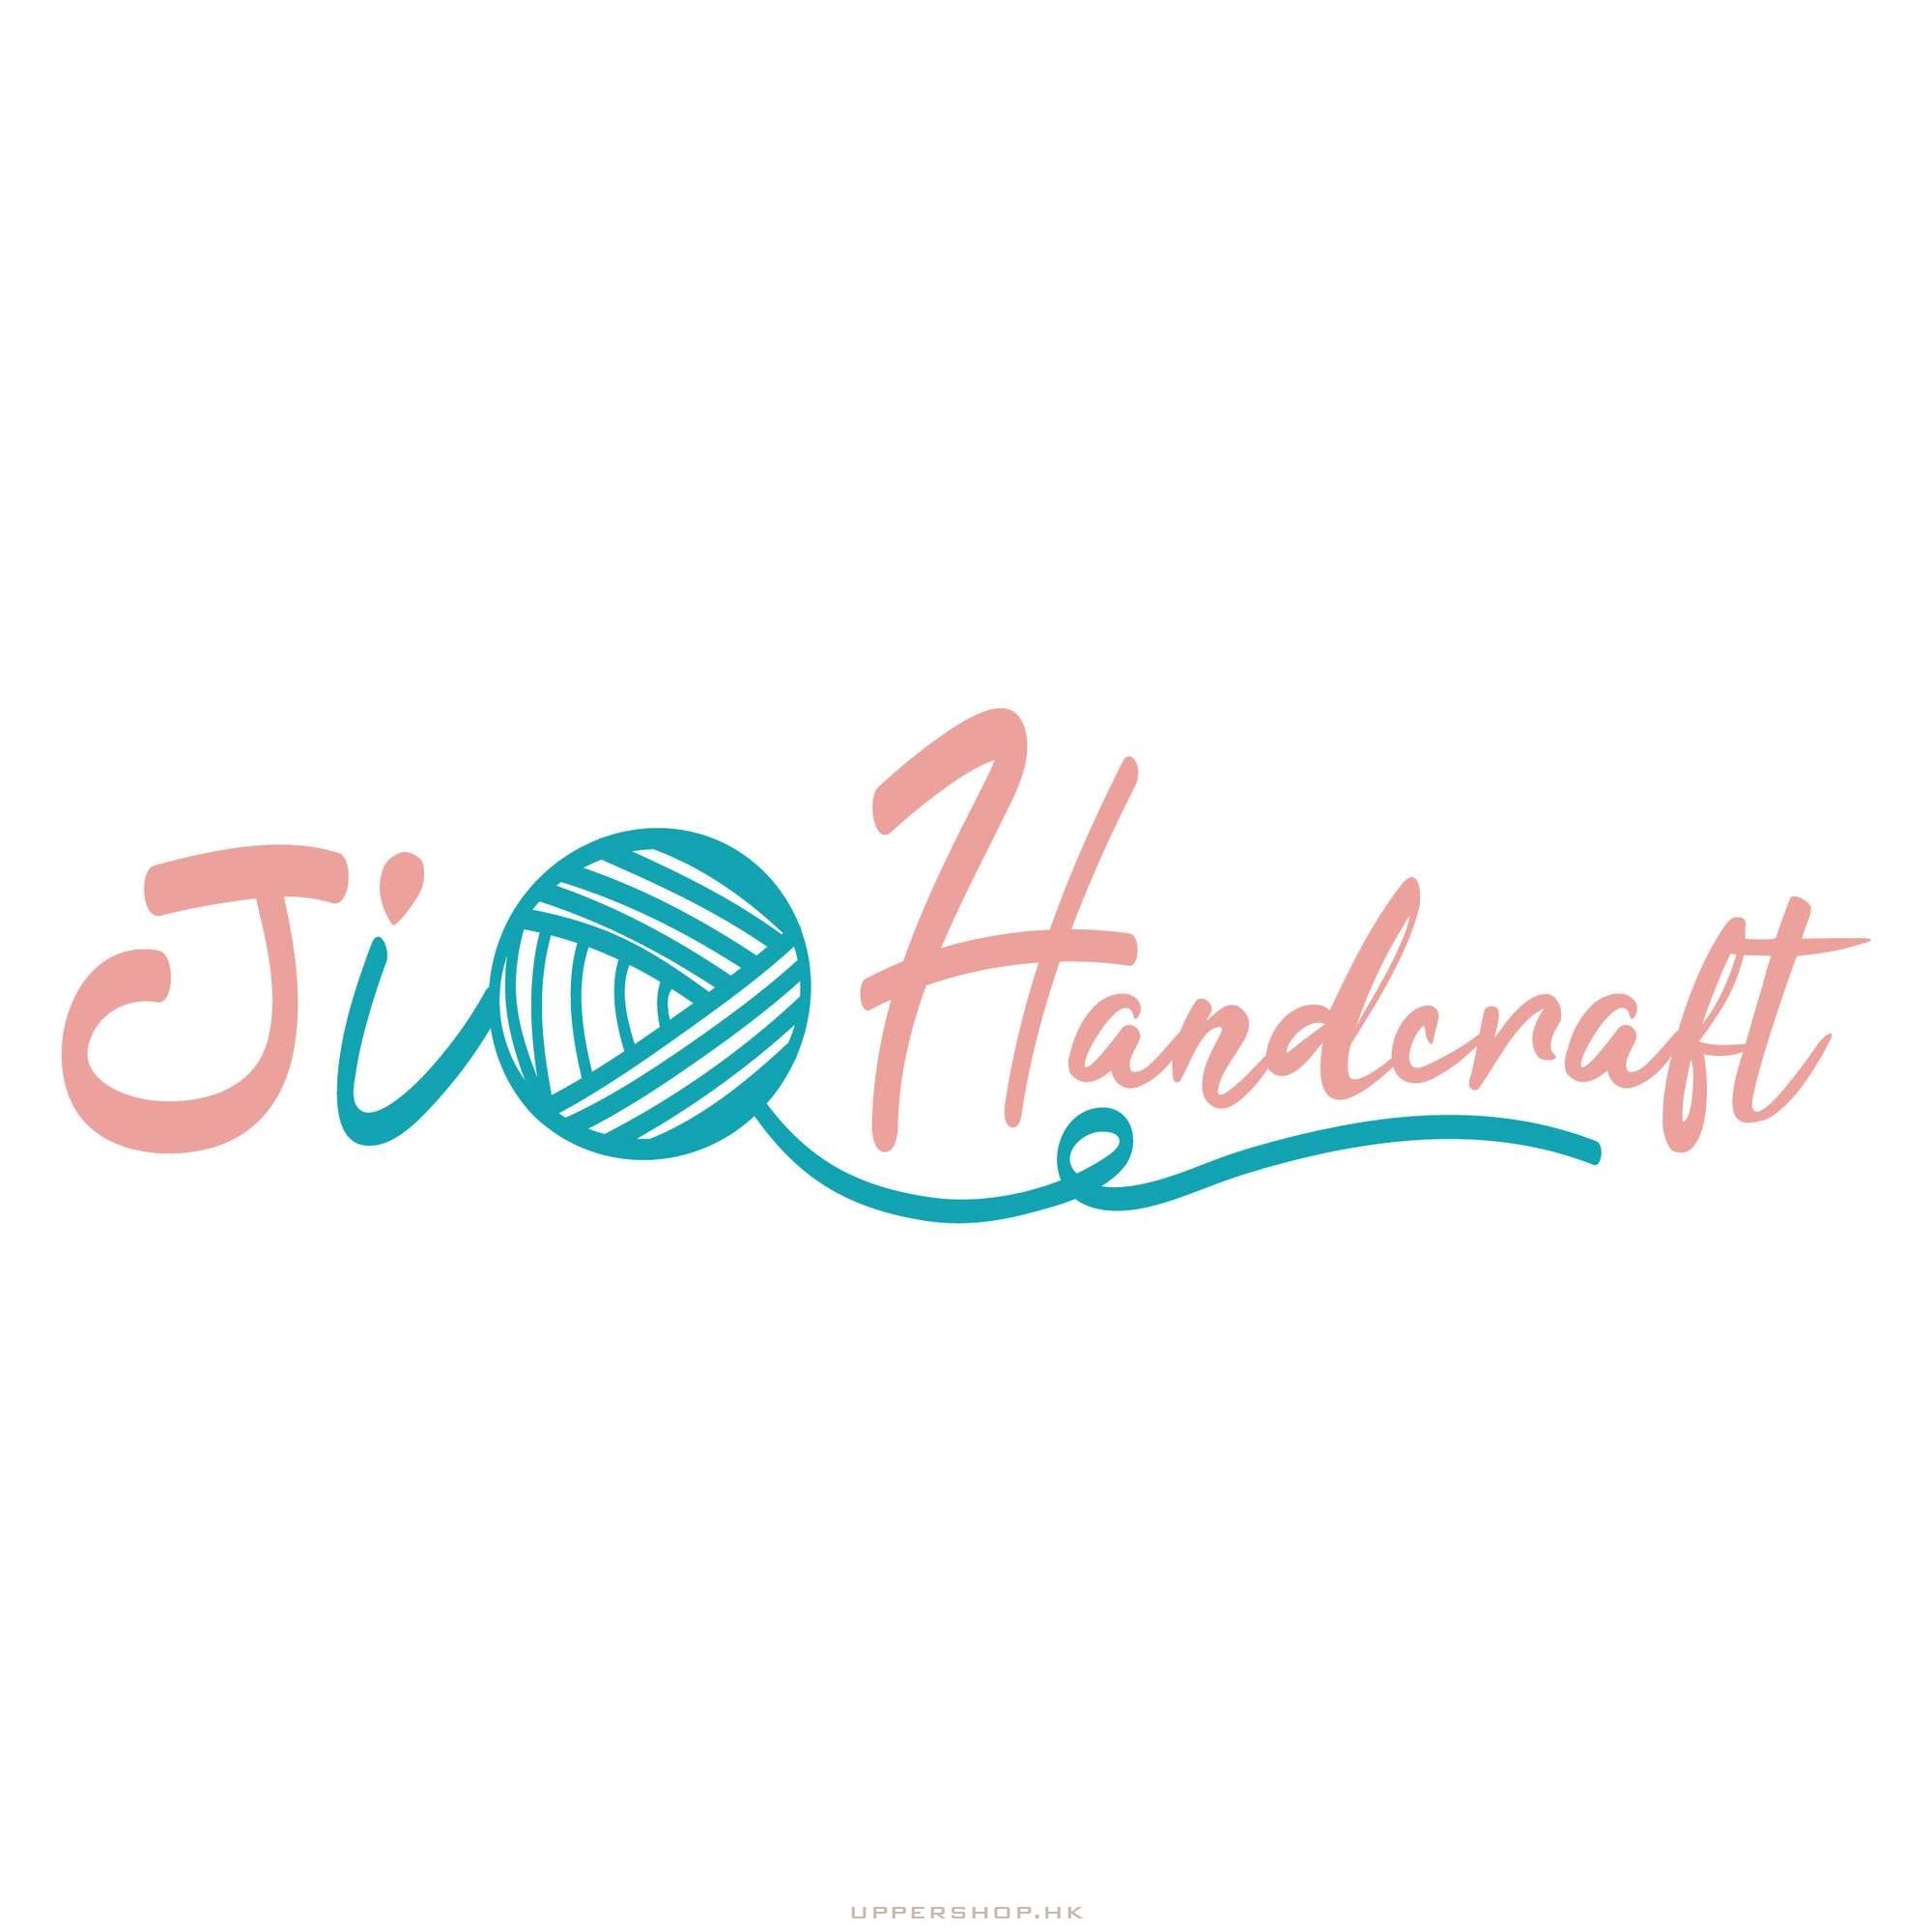 JI Handcraft